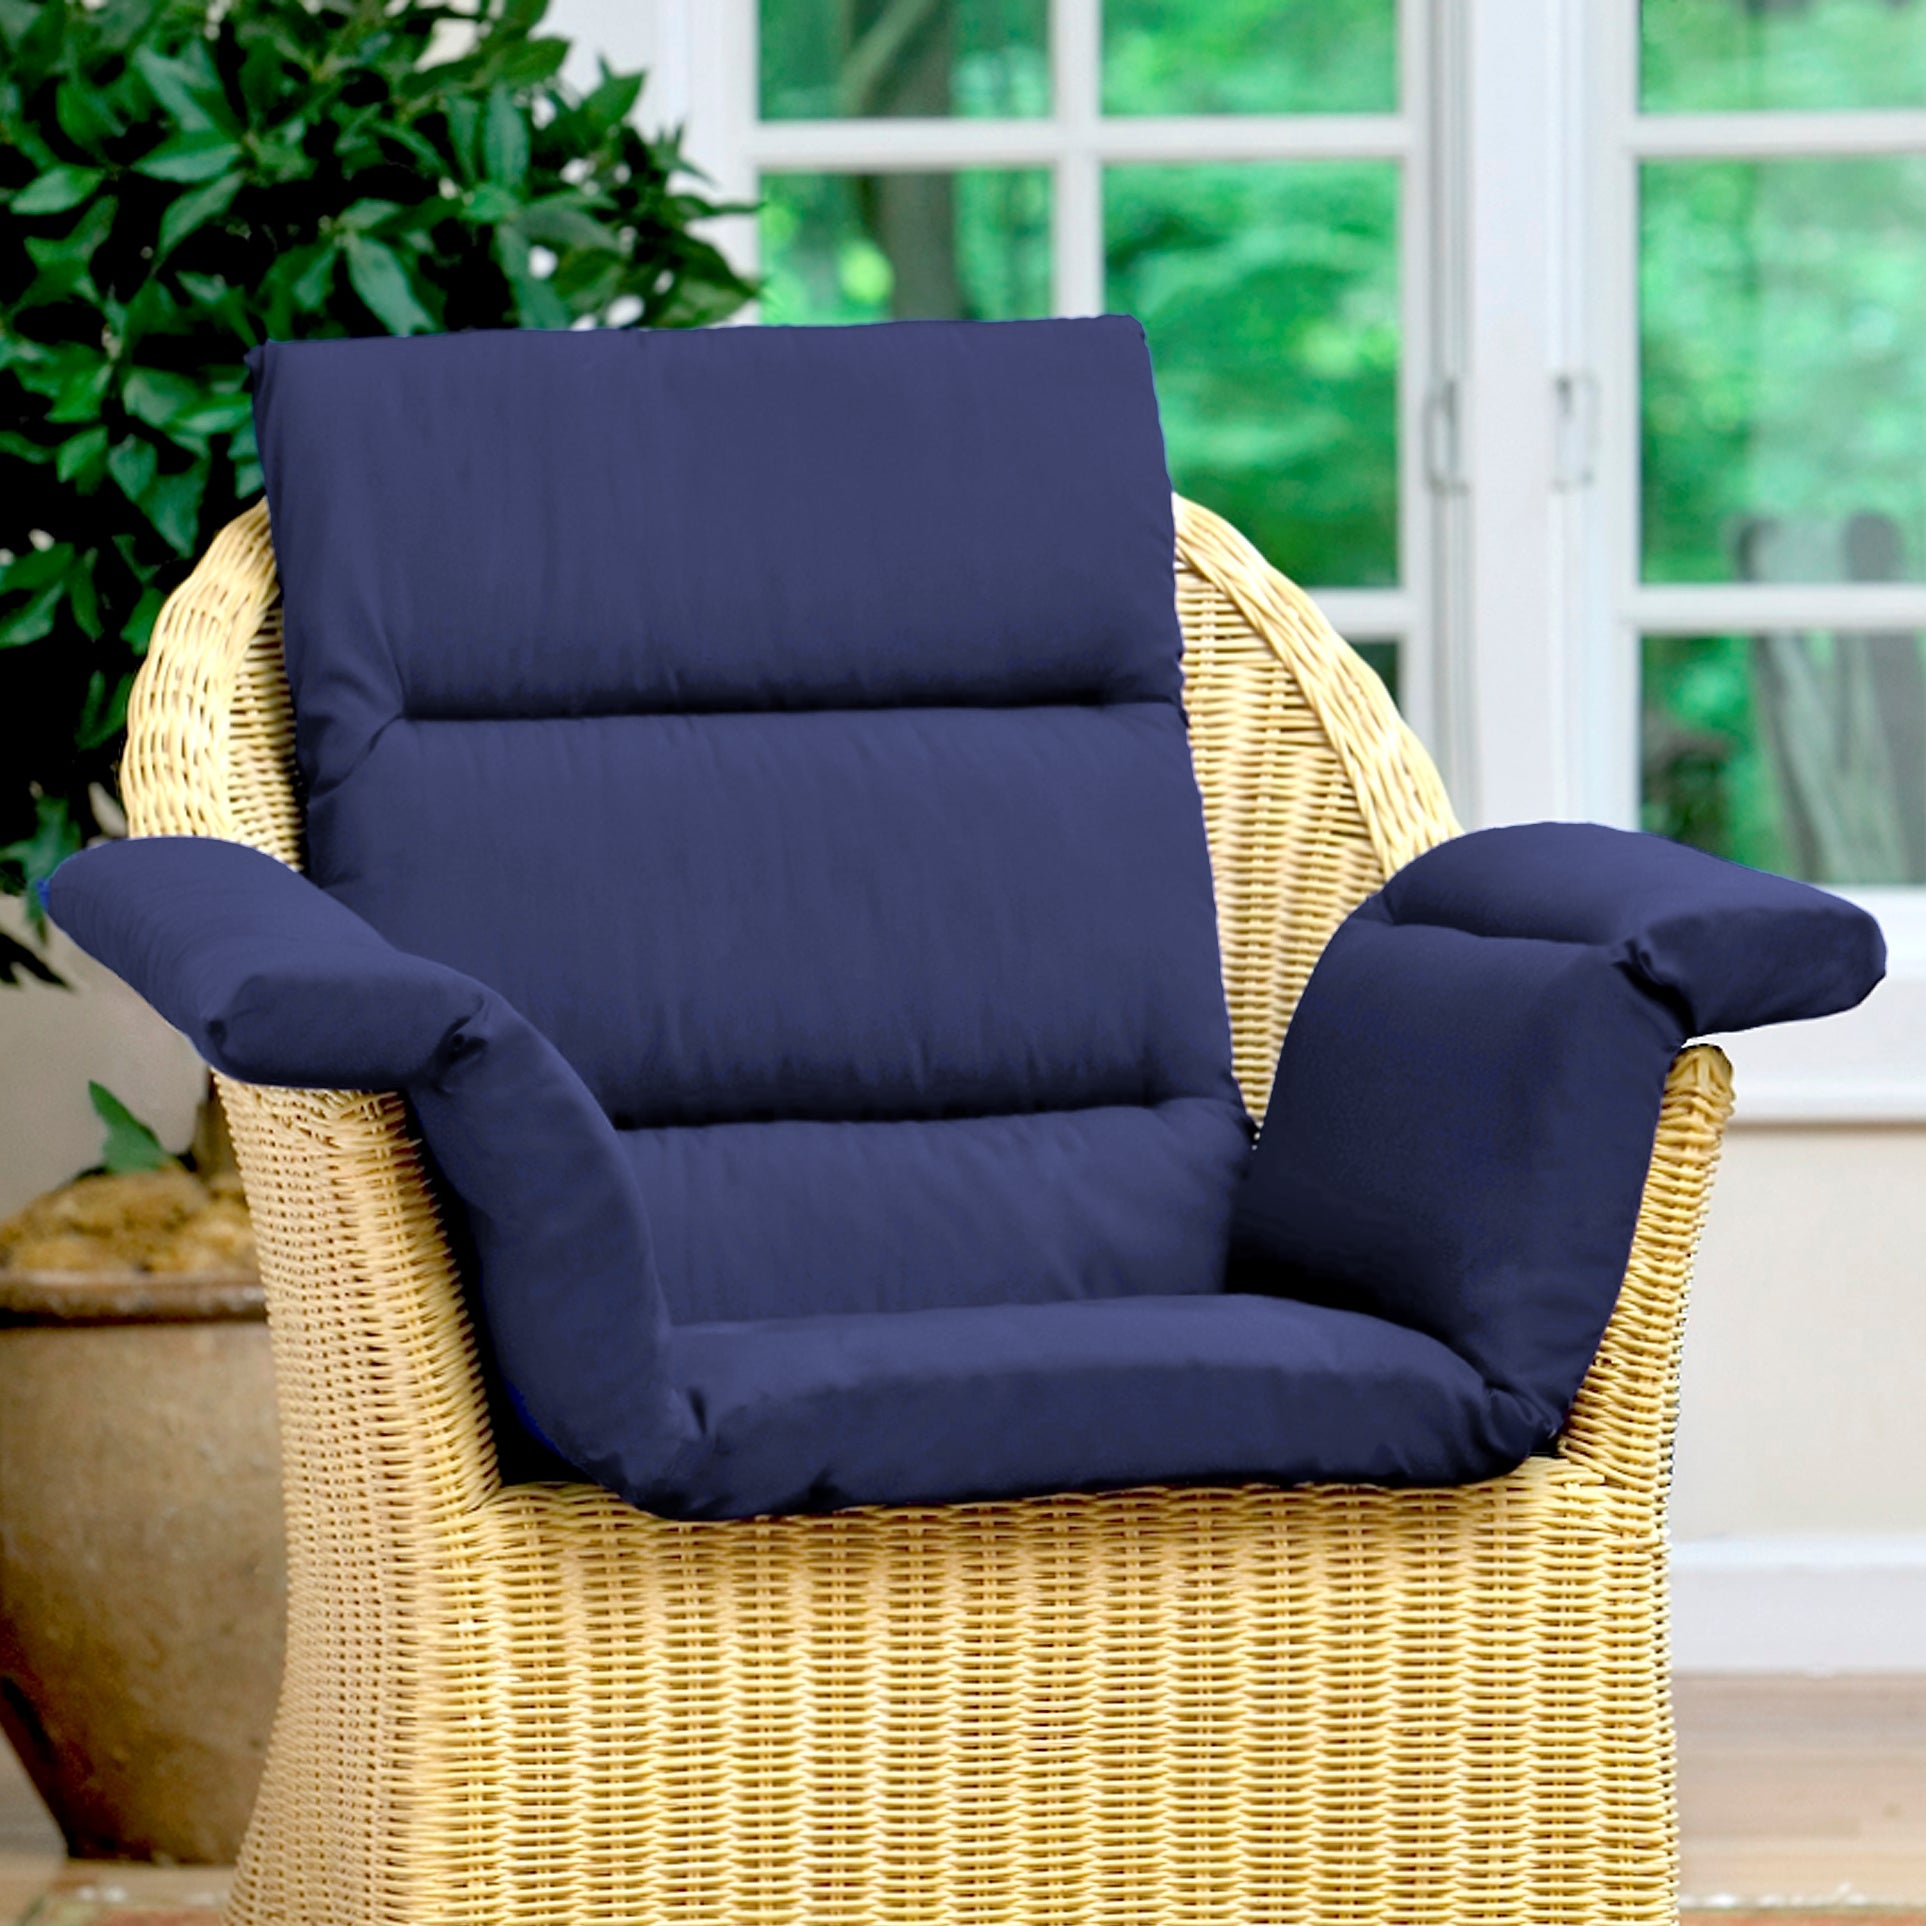 CareActive Total Chair Cushion - Brown